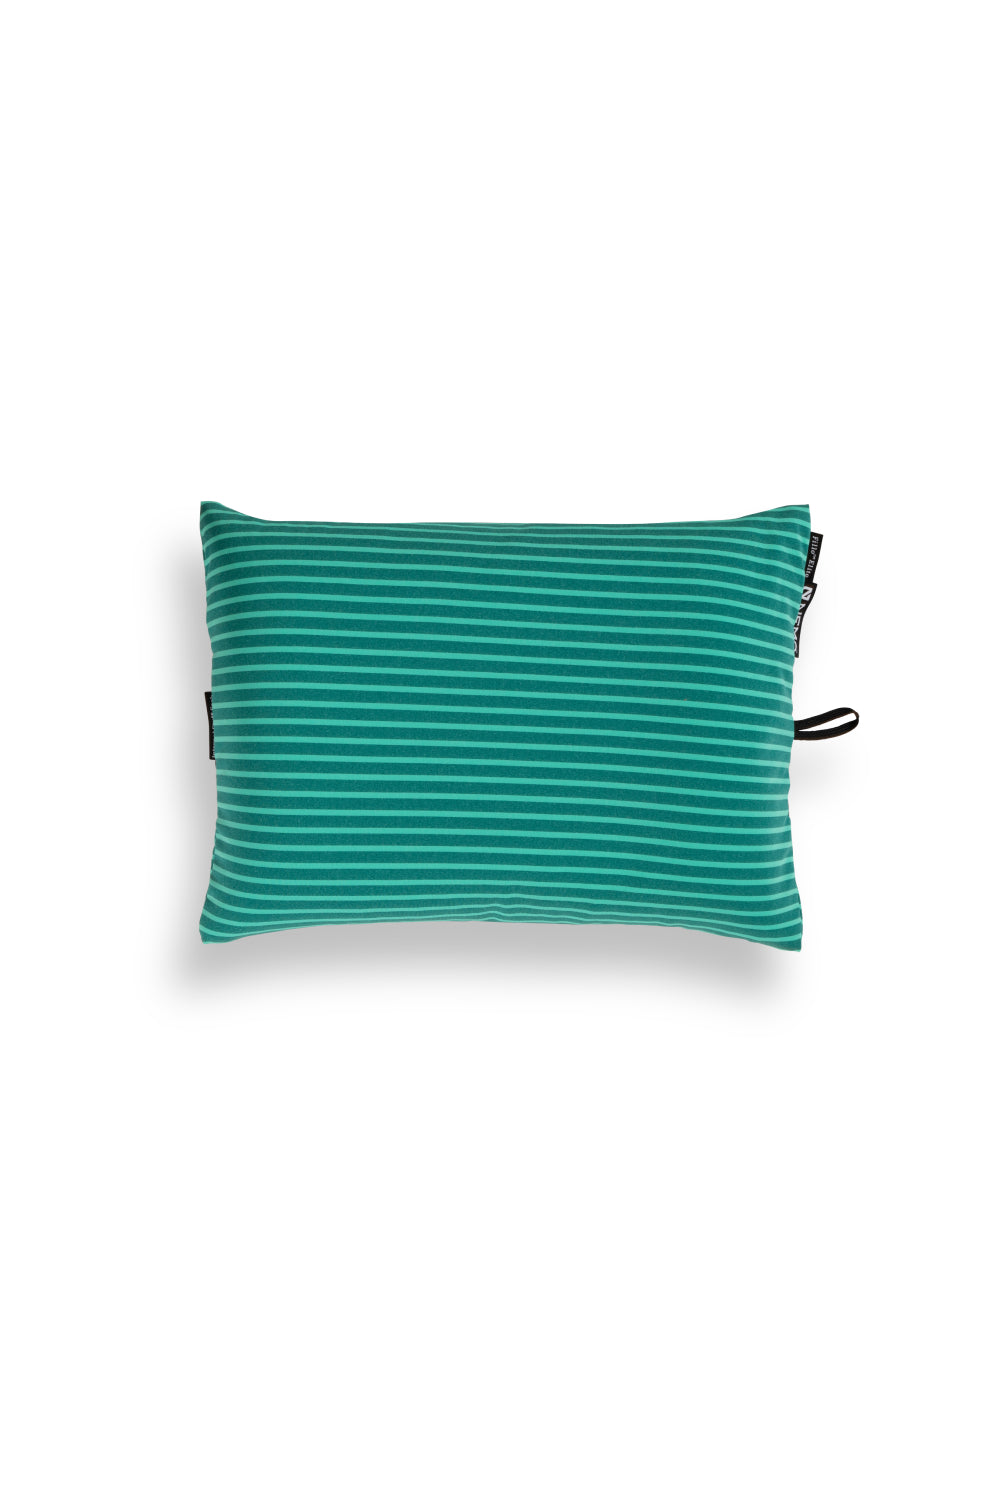 Nemo Fillo Elite Pillow - Sapphire Stripe | Coffee Outdoors